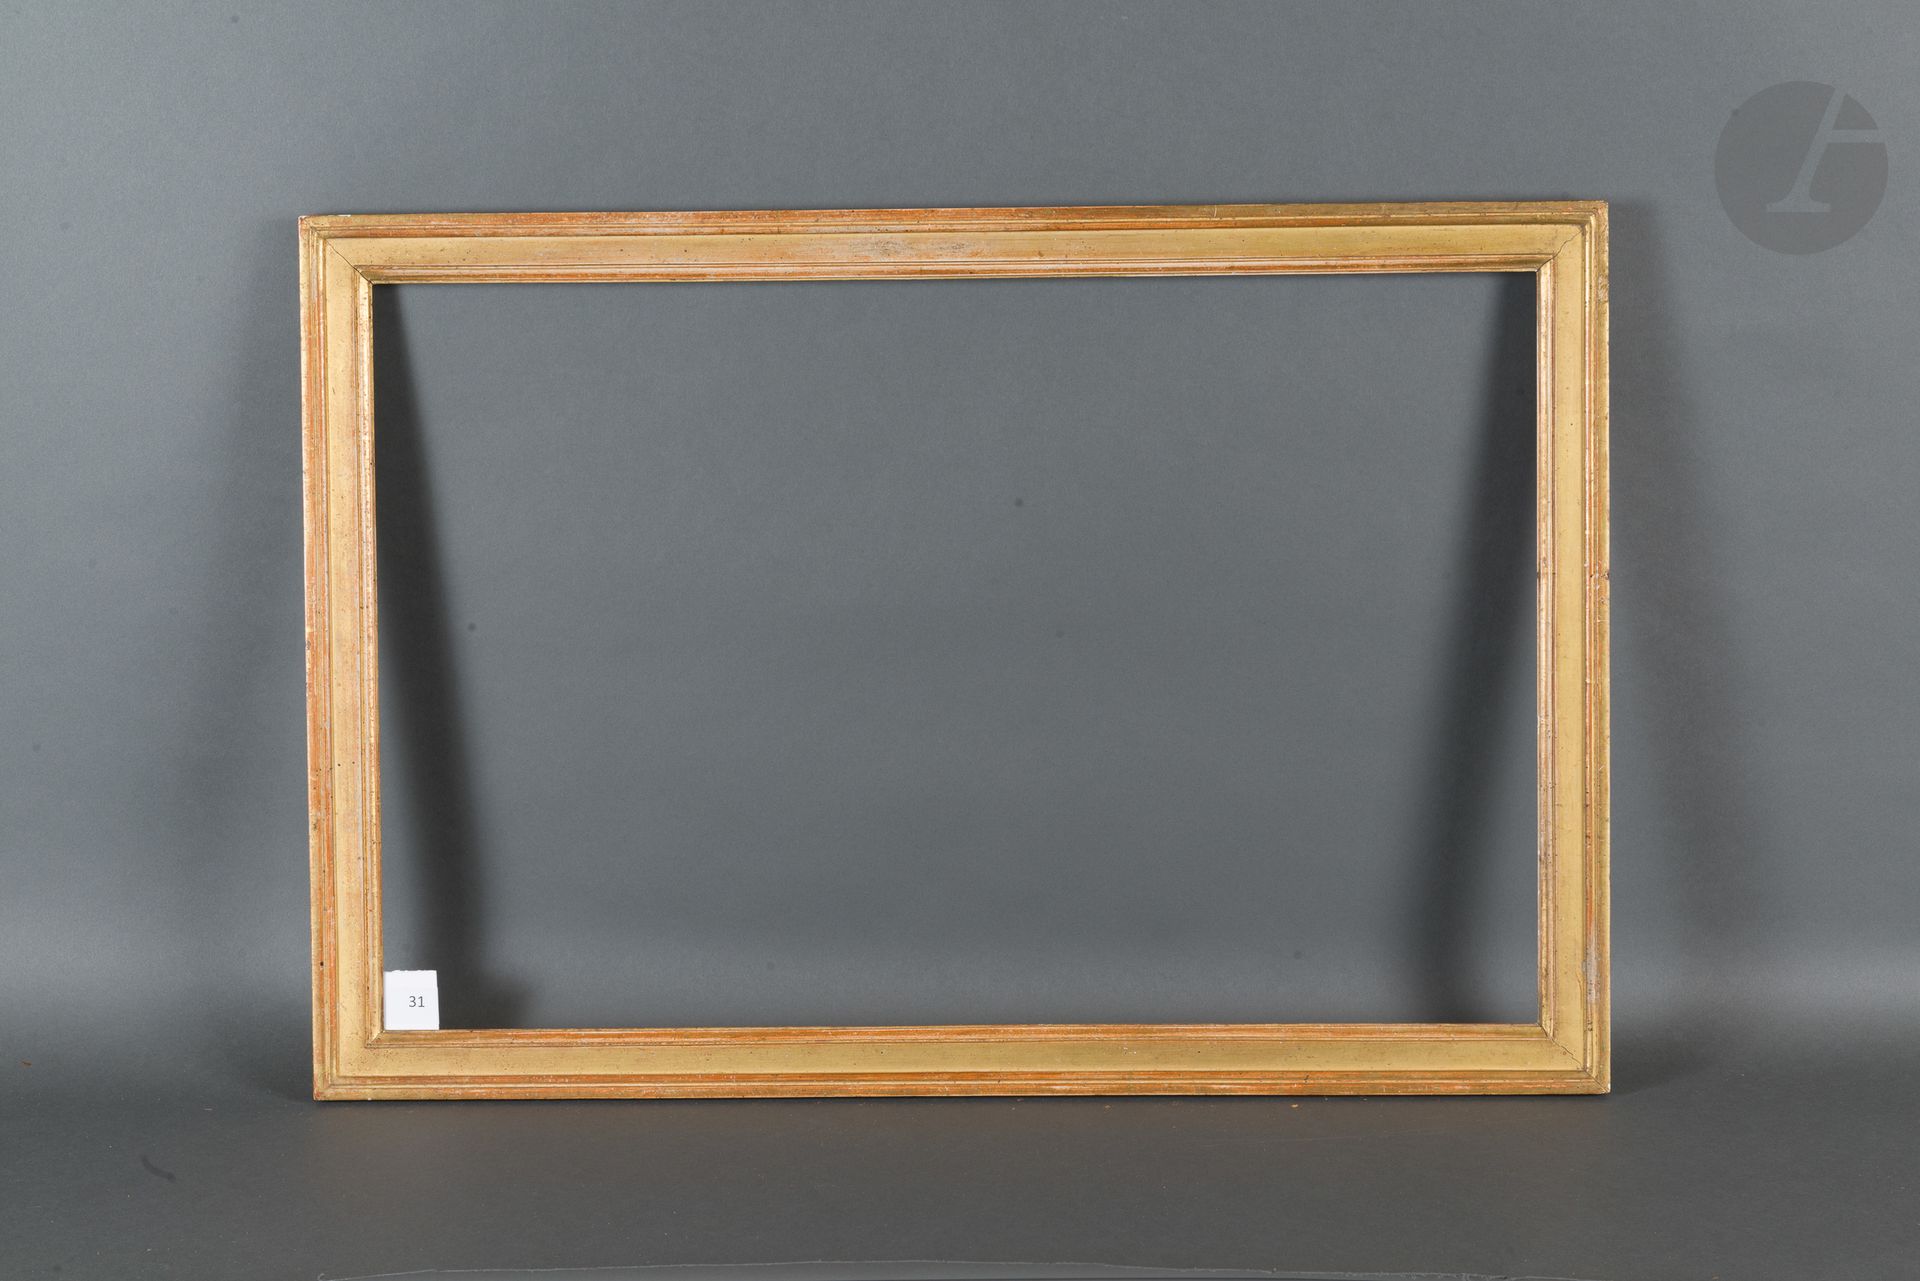 Null 佩芬风格的模制和镀金橡木杆。路易十六时期（小事故）。
43 x 66,8 cm - 外形 : 4 cm